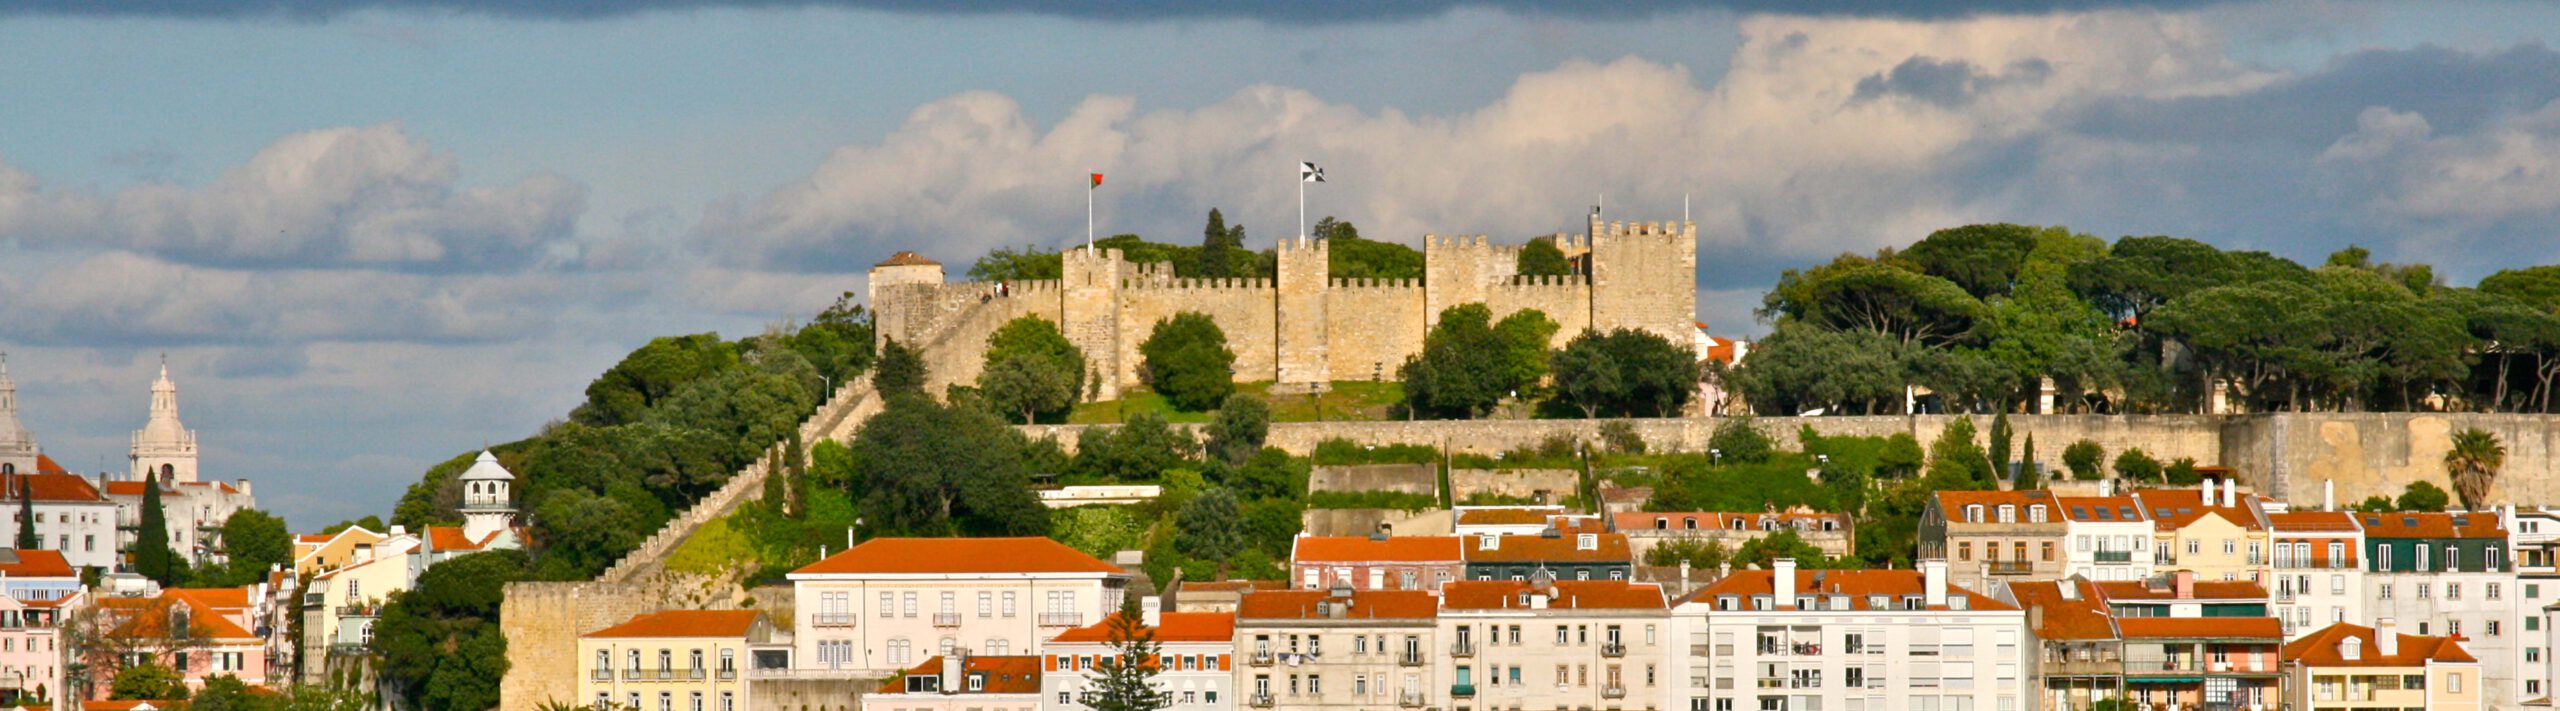 Castelo de S. Jorge Portugal